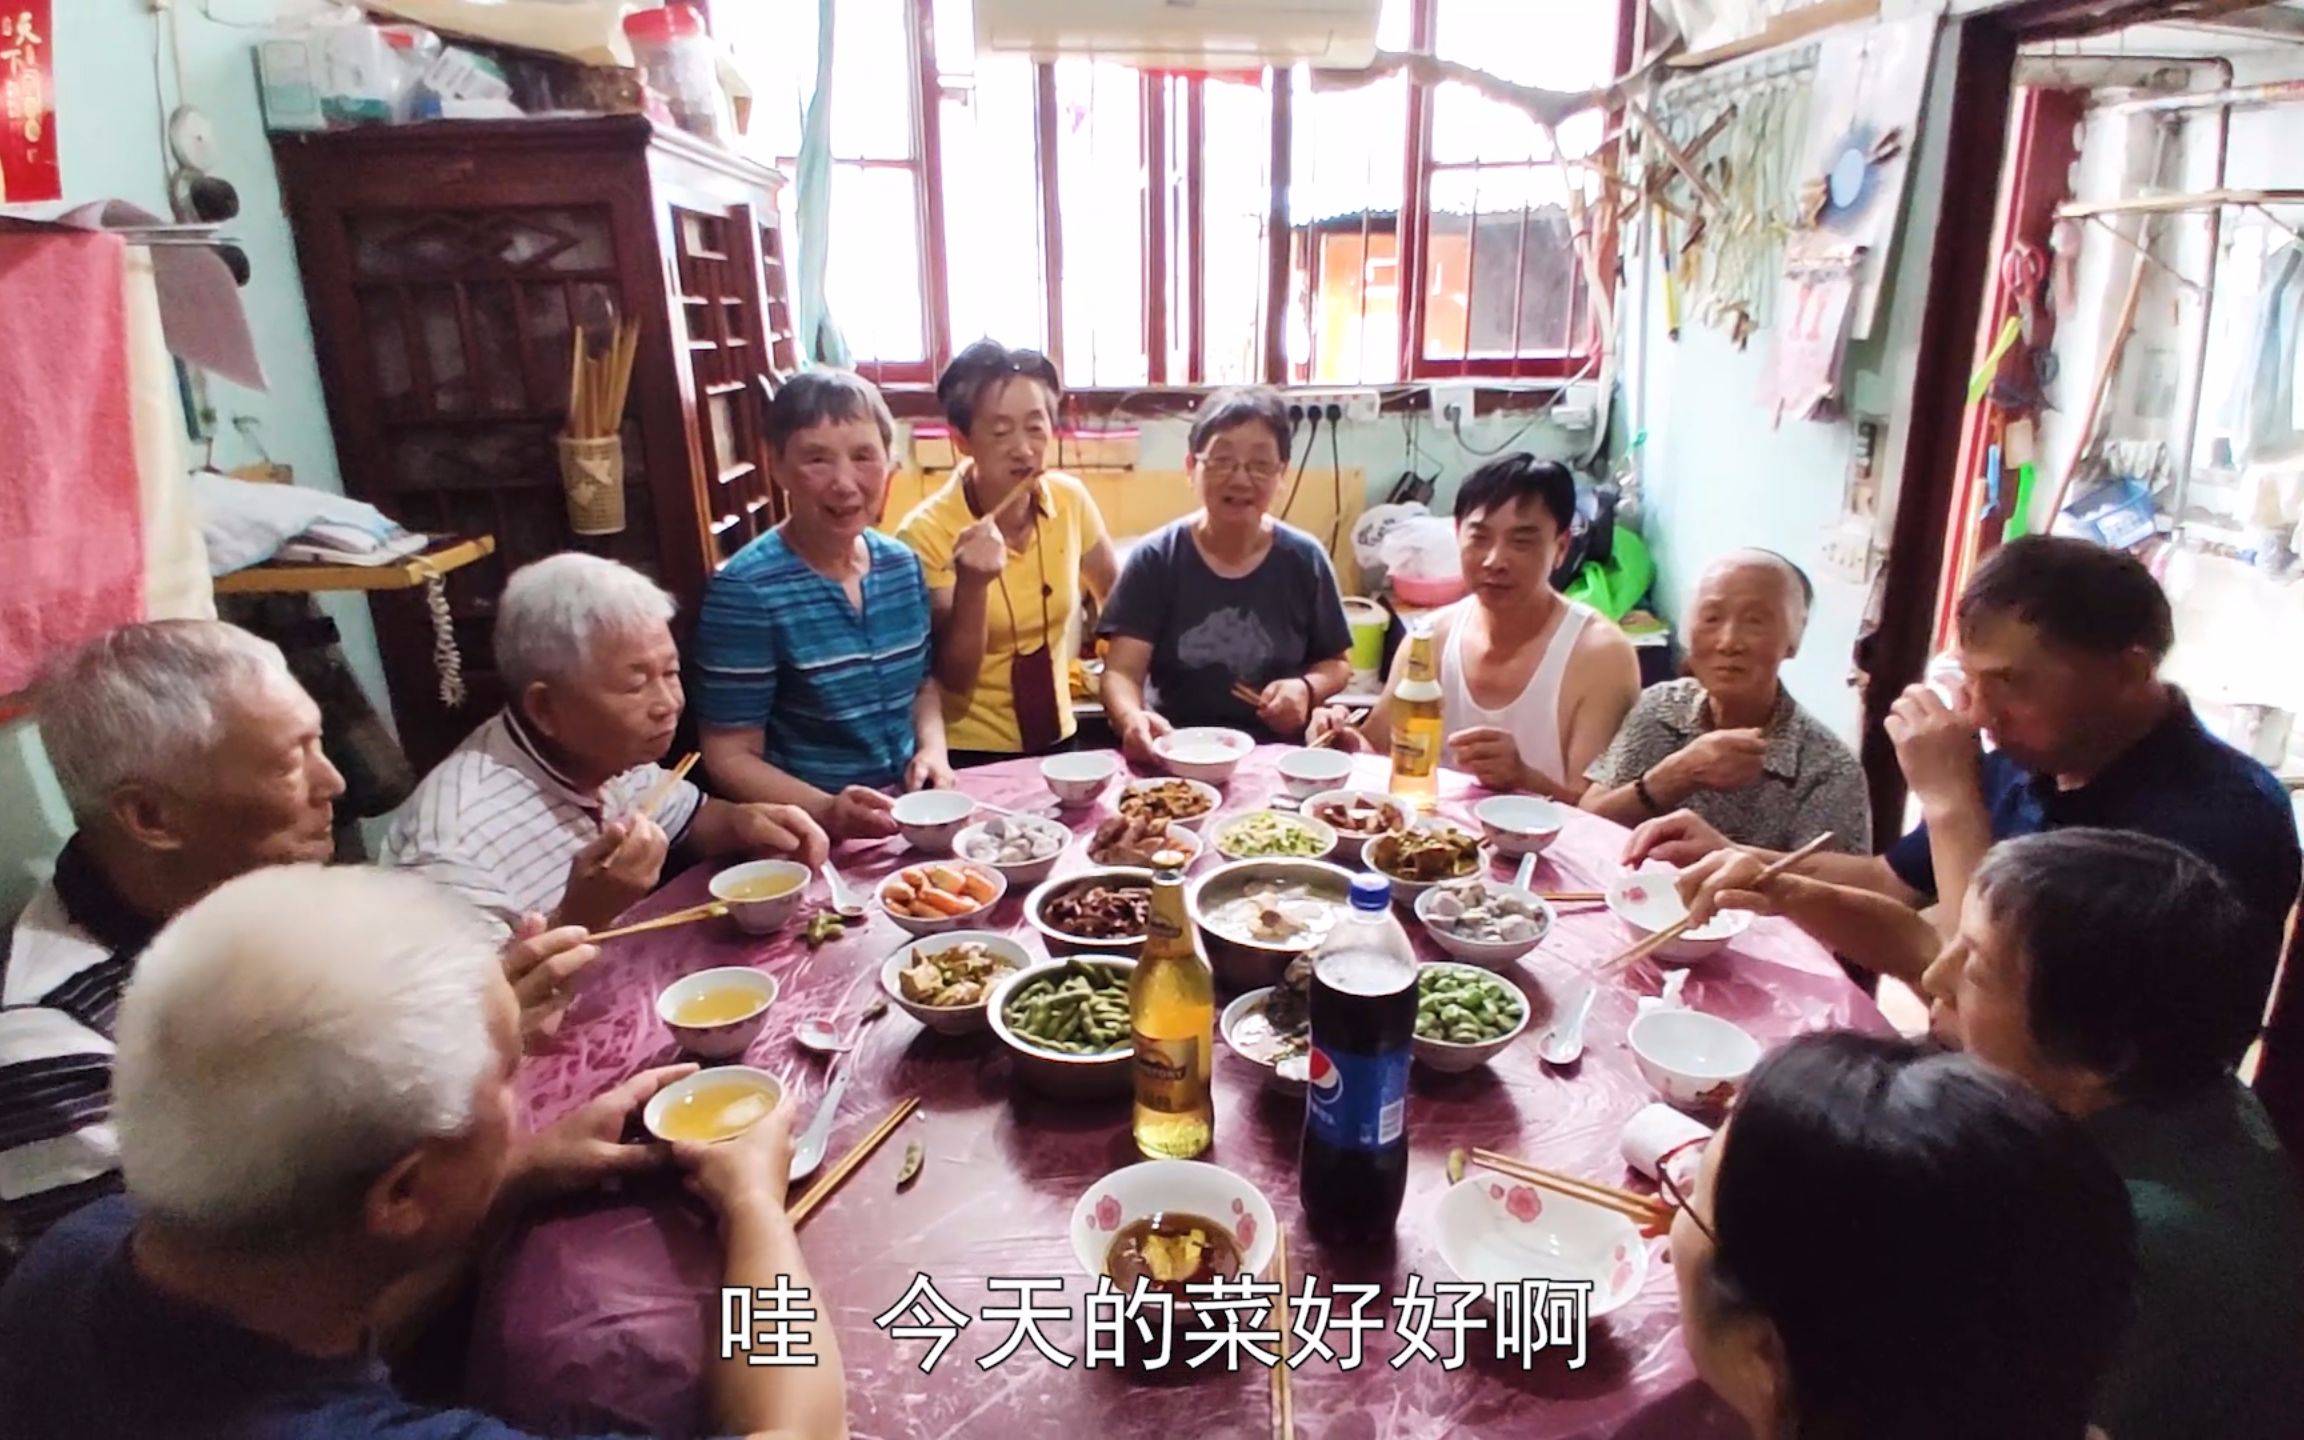 [图]樊医生带张小兔去外婆家回忆童年，看看老上海弄堂的风情，外婆烧了一大桌菜，都是老上海味道